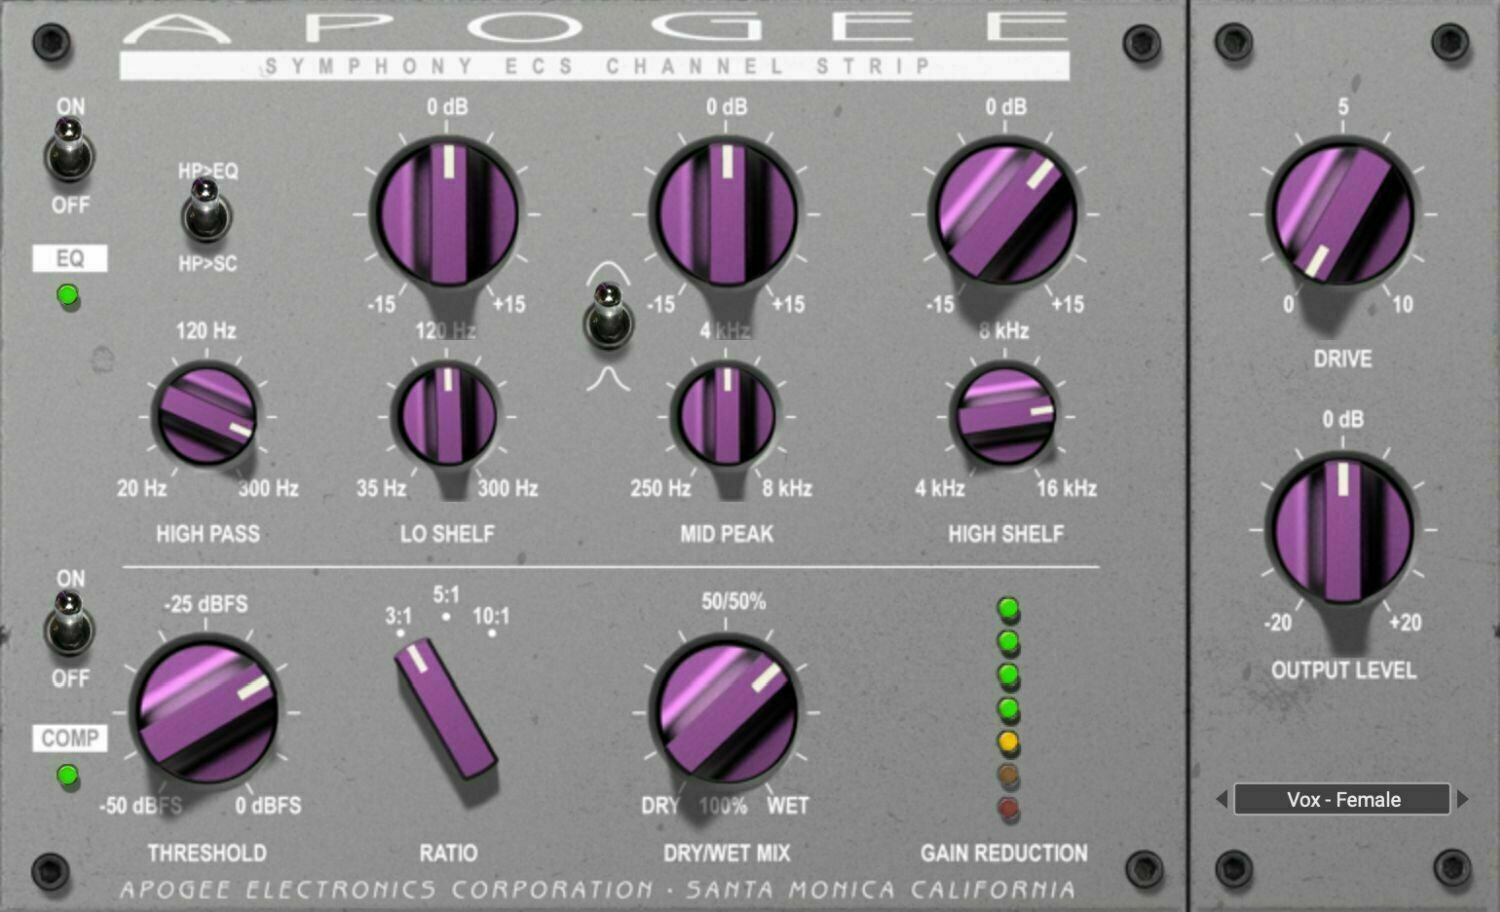 Logiciel de studio Plugins d'effets Apogee FX Rack Symphony ECS Channel Strip (Produit numérique)